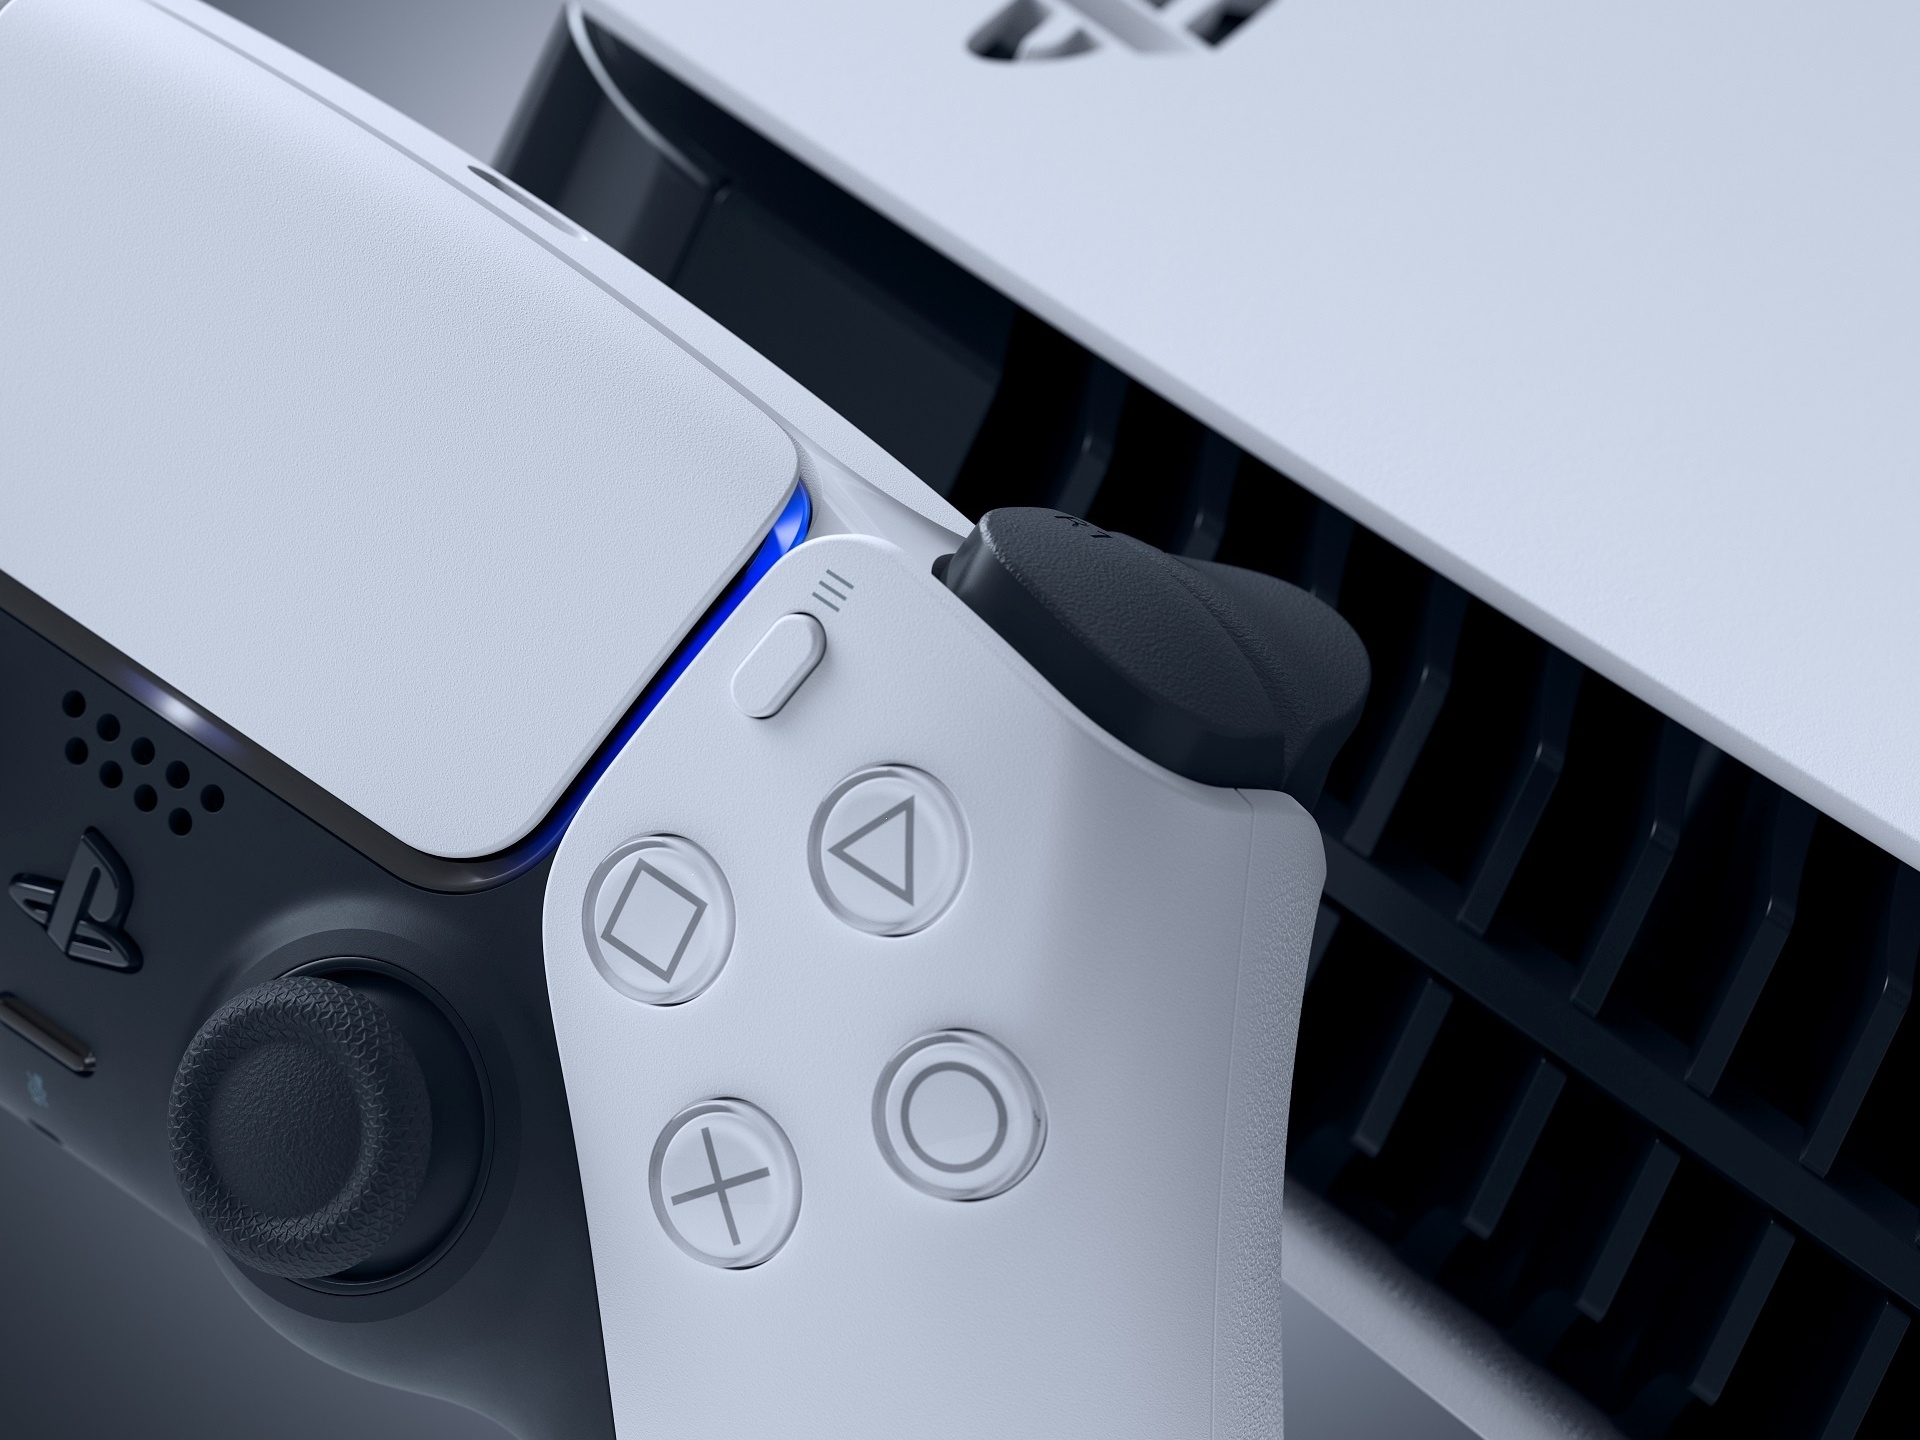 Conheça a nova PS Plus e entenda as mudanças no serviço da Sony